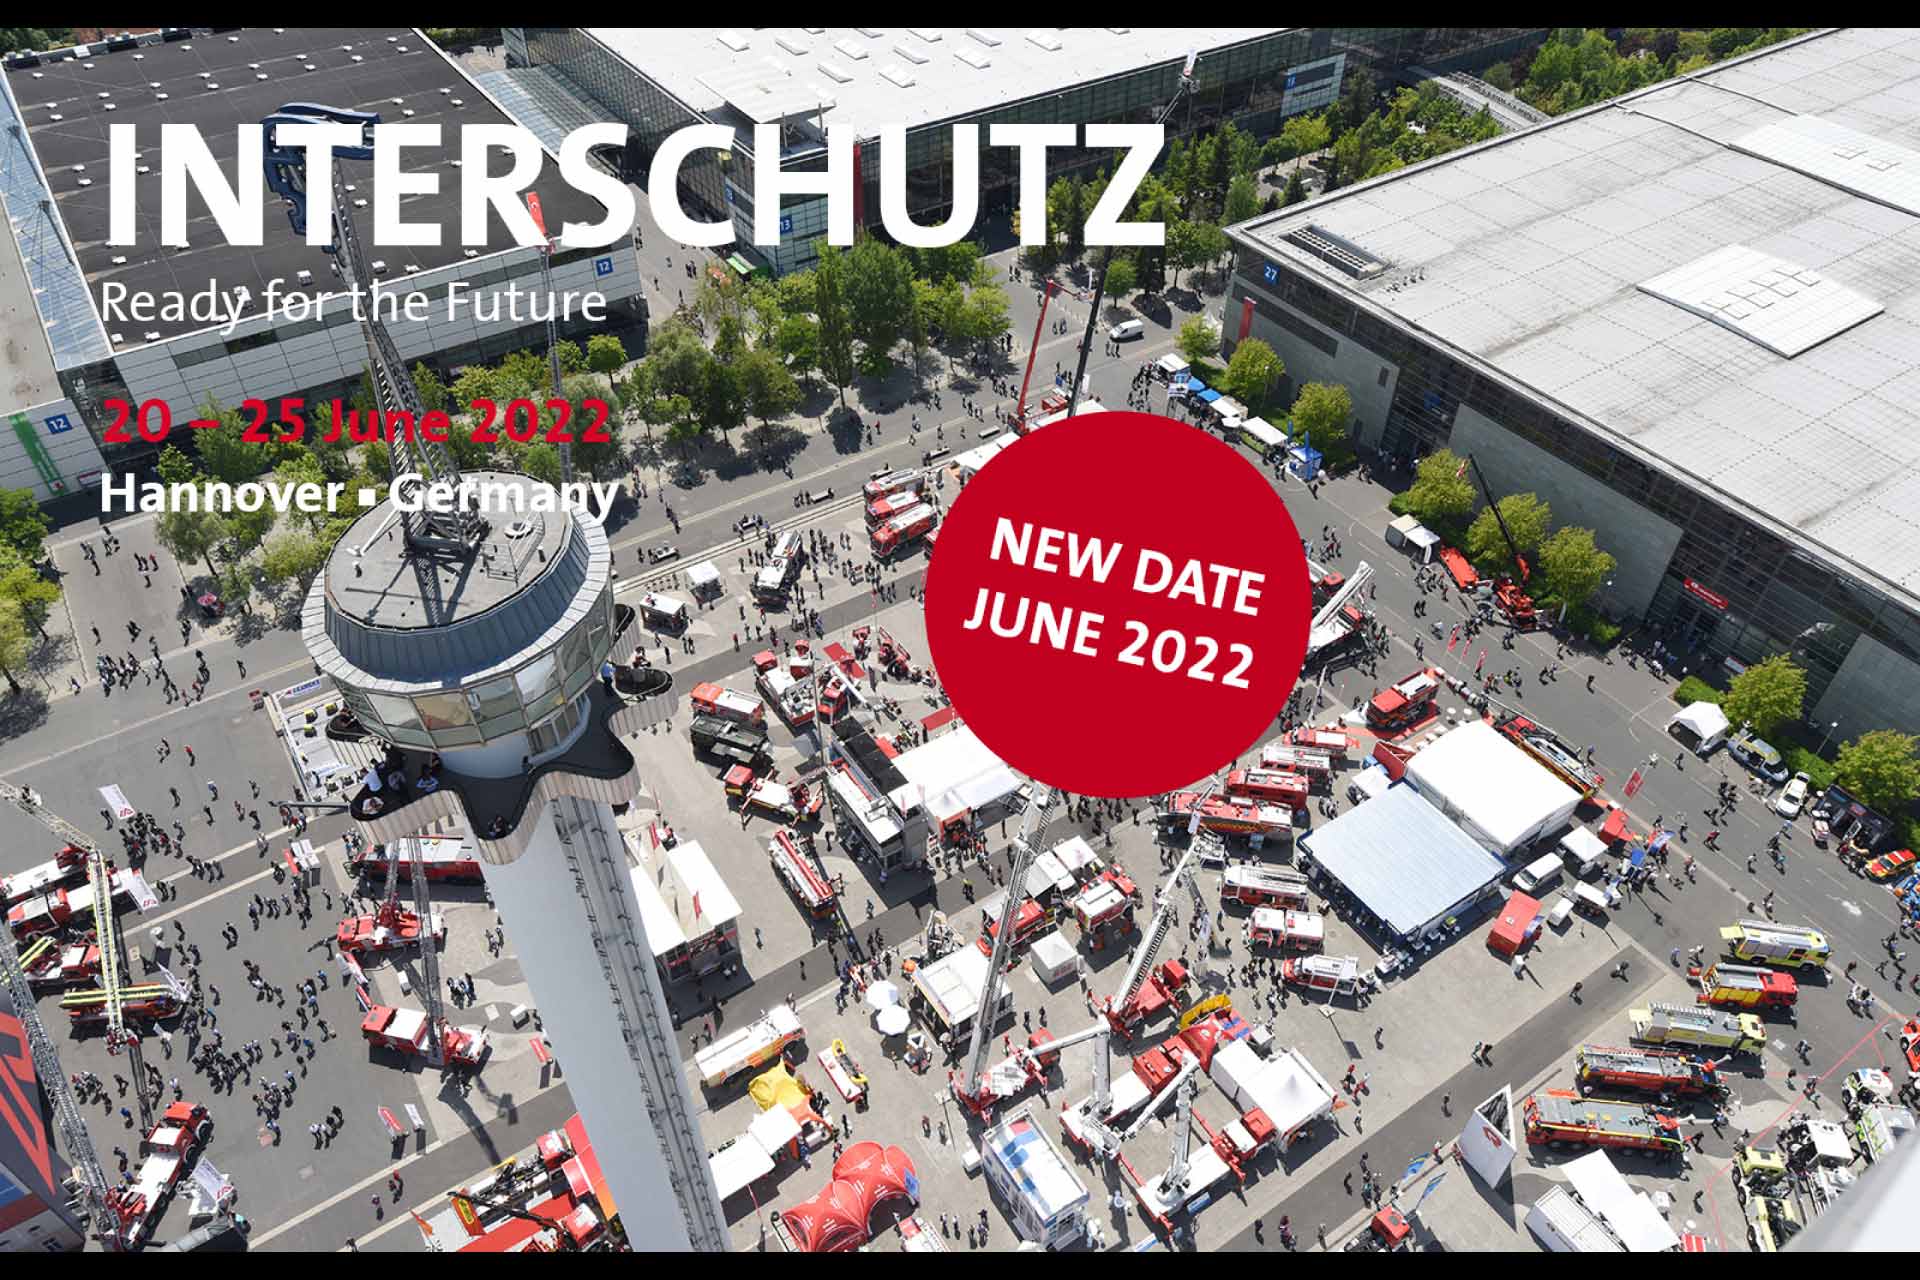 See us at Interschutz 2022